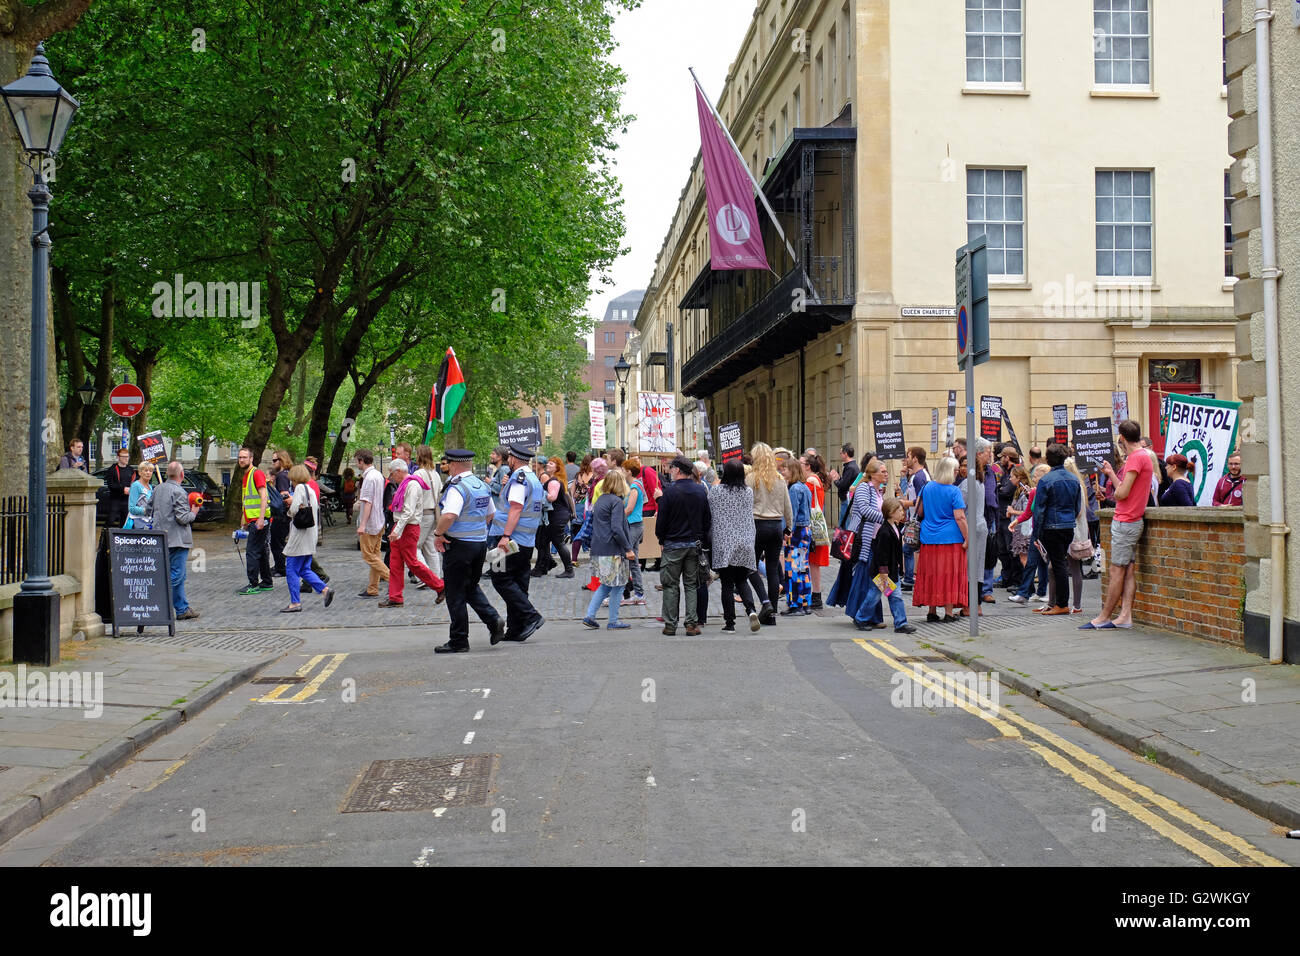 Bristol, Royaume-Uni. 4 juin, 2016. Manifestants à une démonstration ici Bienvenue réfugiés dans les rues de Bristol. La manifestation était organisée pour protester contre les politiques du gouvernement britannique à l'égard des réfugiés. Banque D'Images